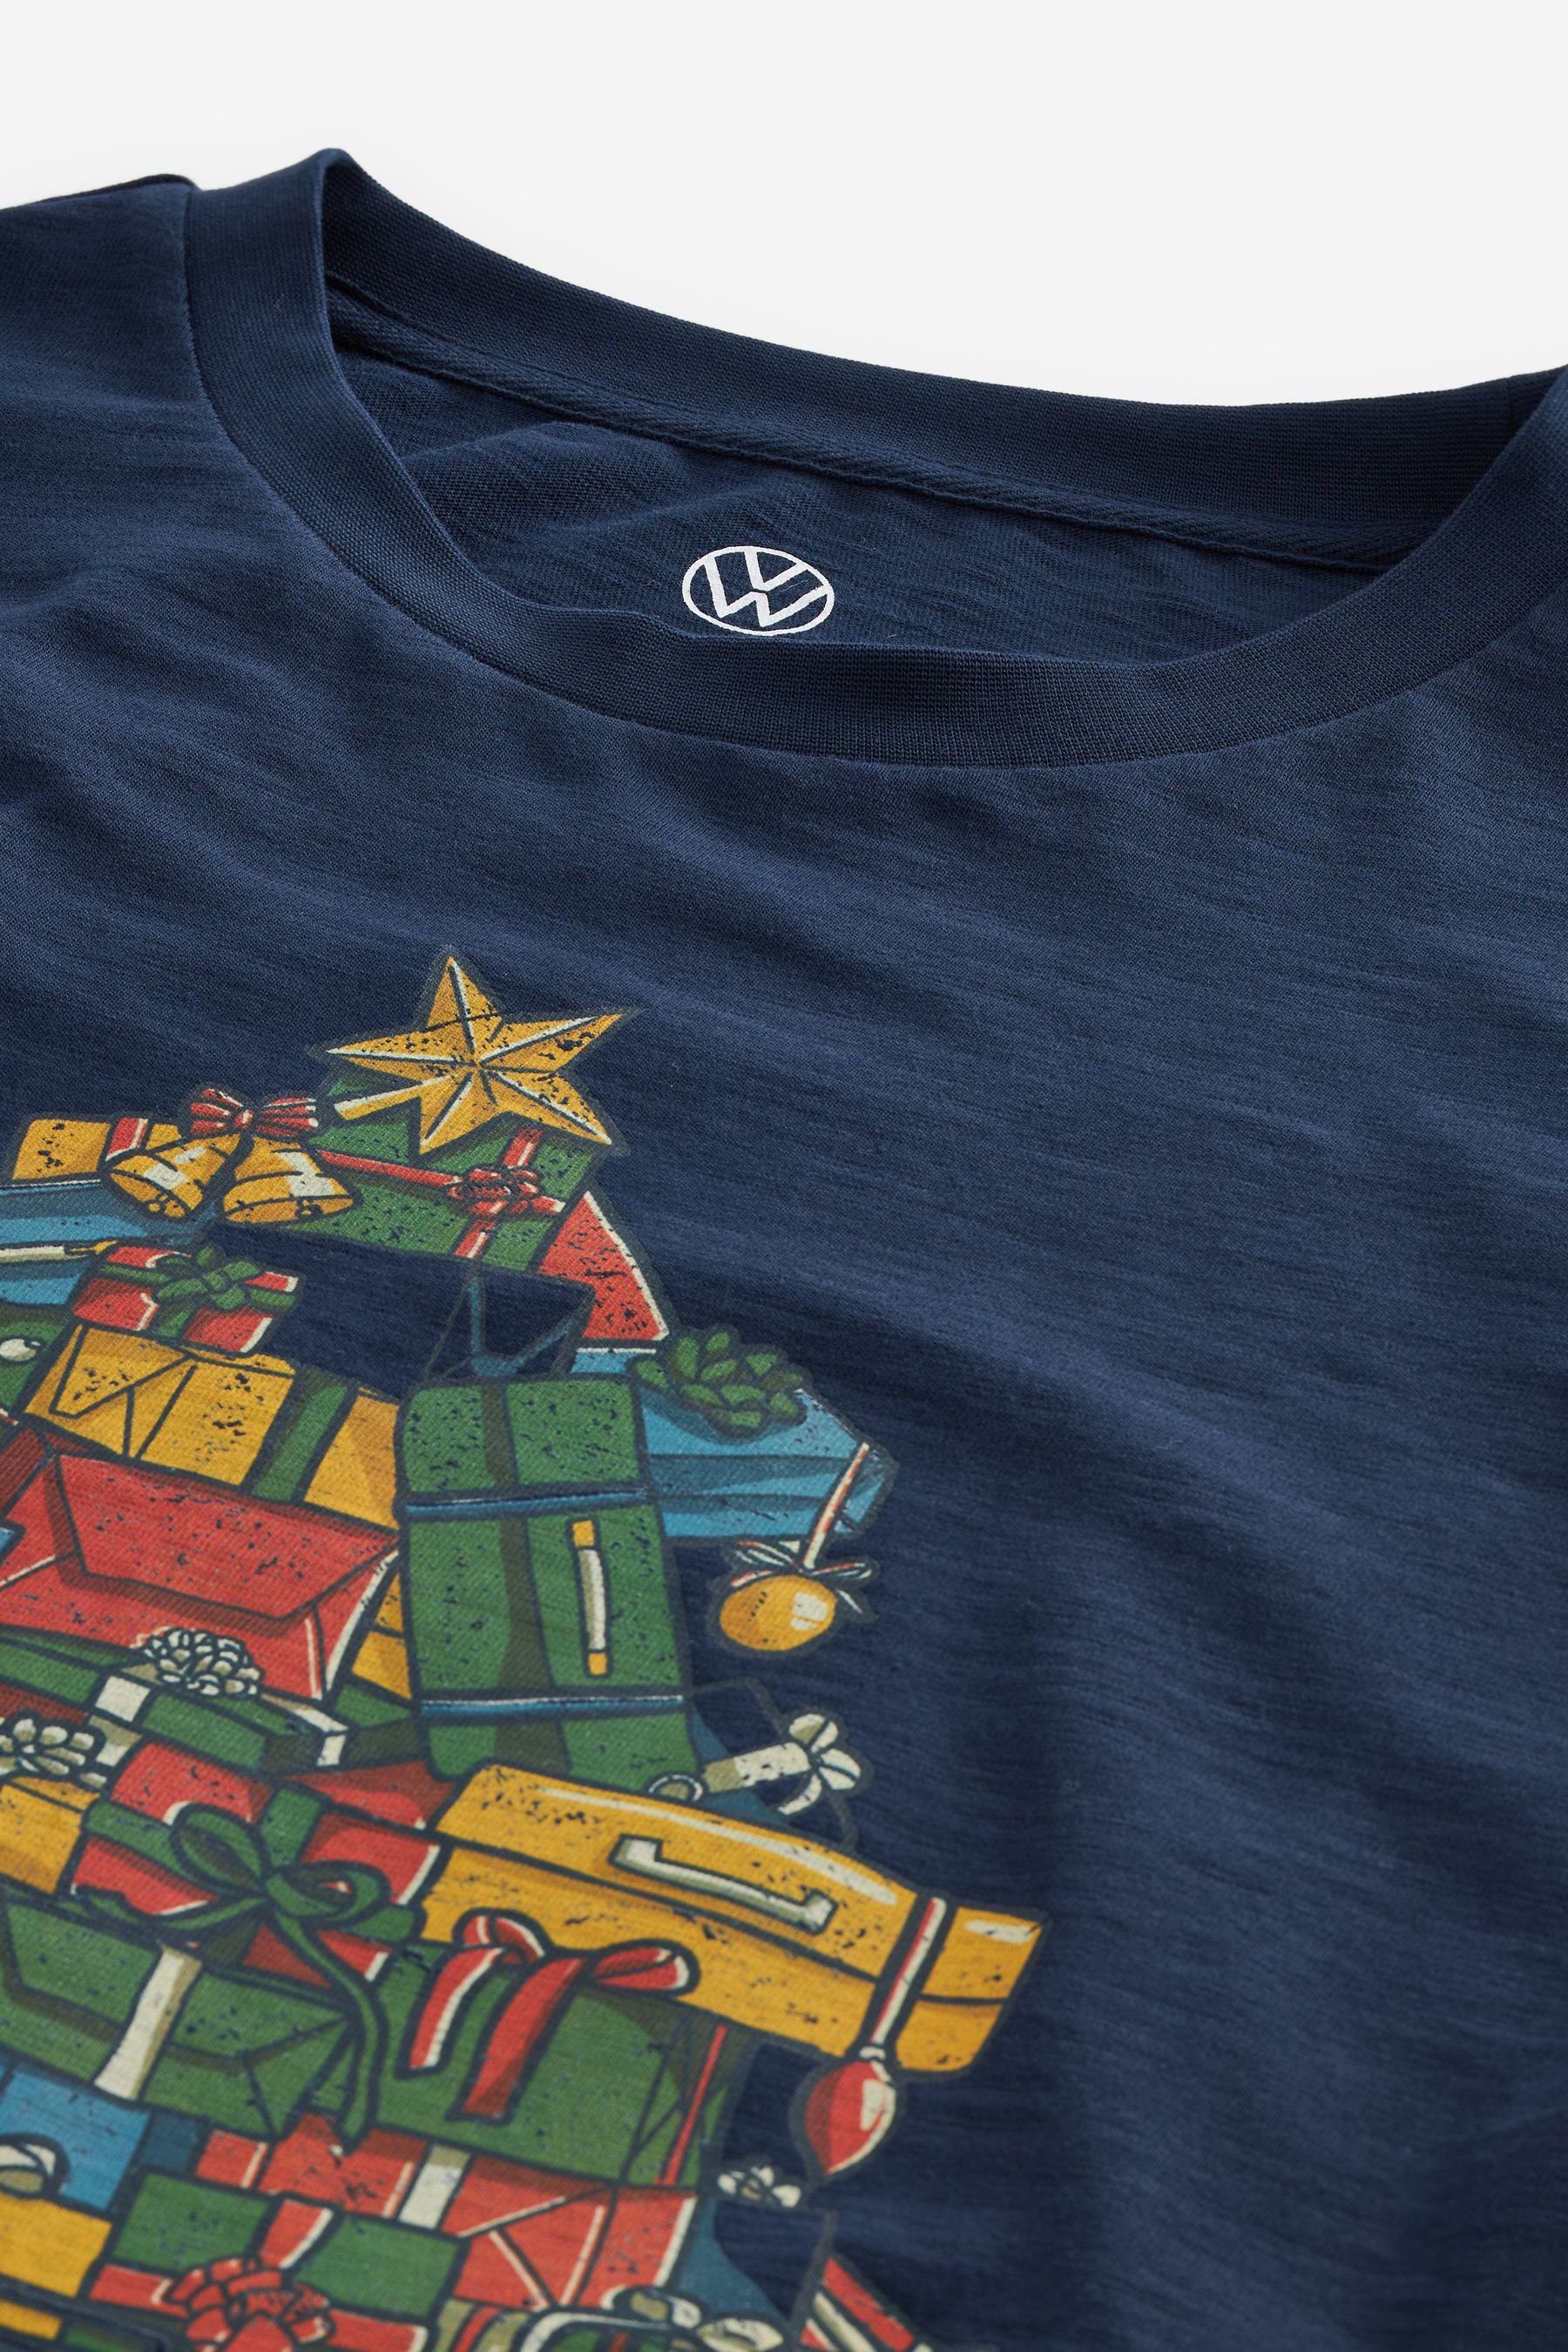 Weihnachtsszene Lizenziertes T-Shirt mit Next T-Shirt (1-tlg)